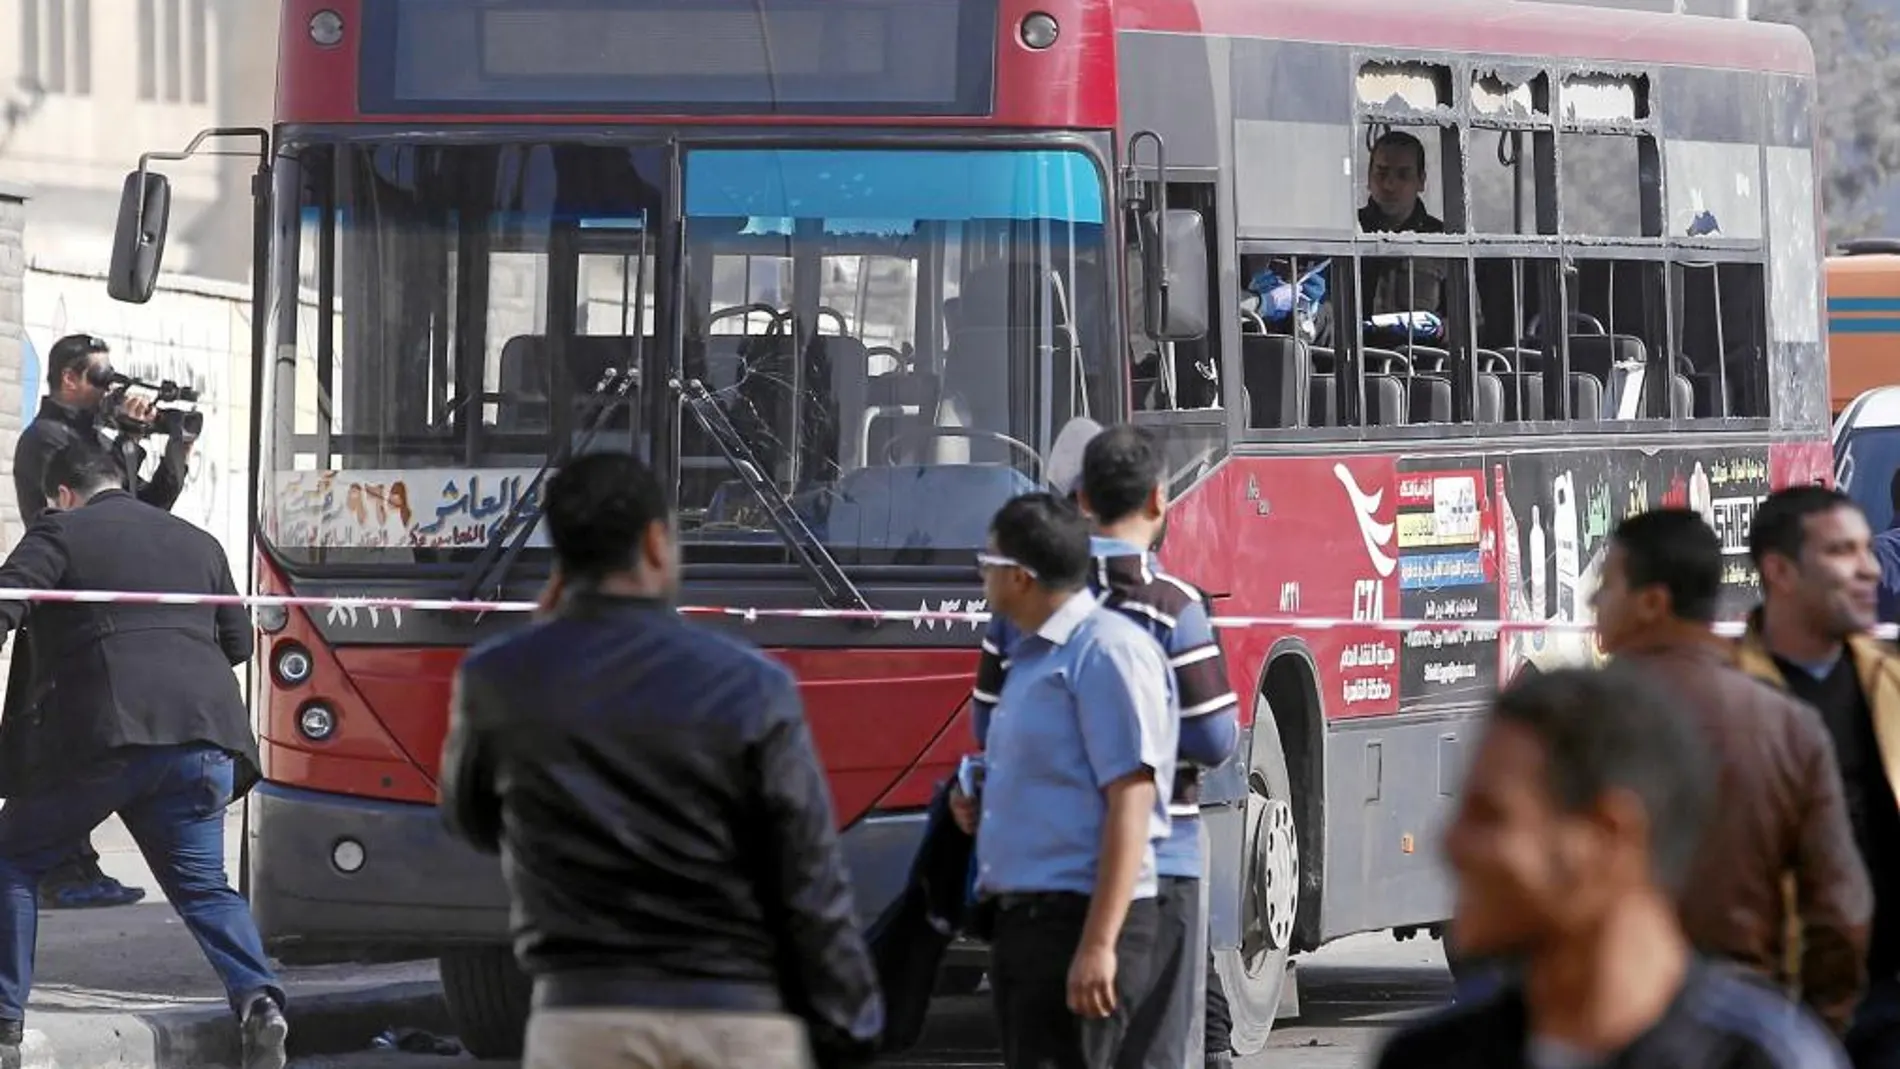 Un artefacto casero explotó junto a este autobús, en el distrito universitario de Al-Azhar, hiriendo a cinco personas